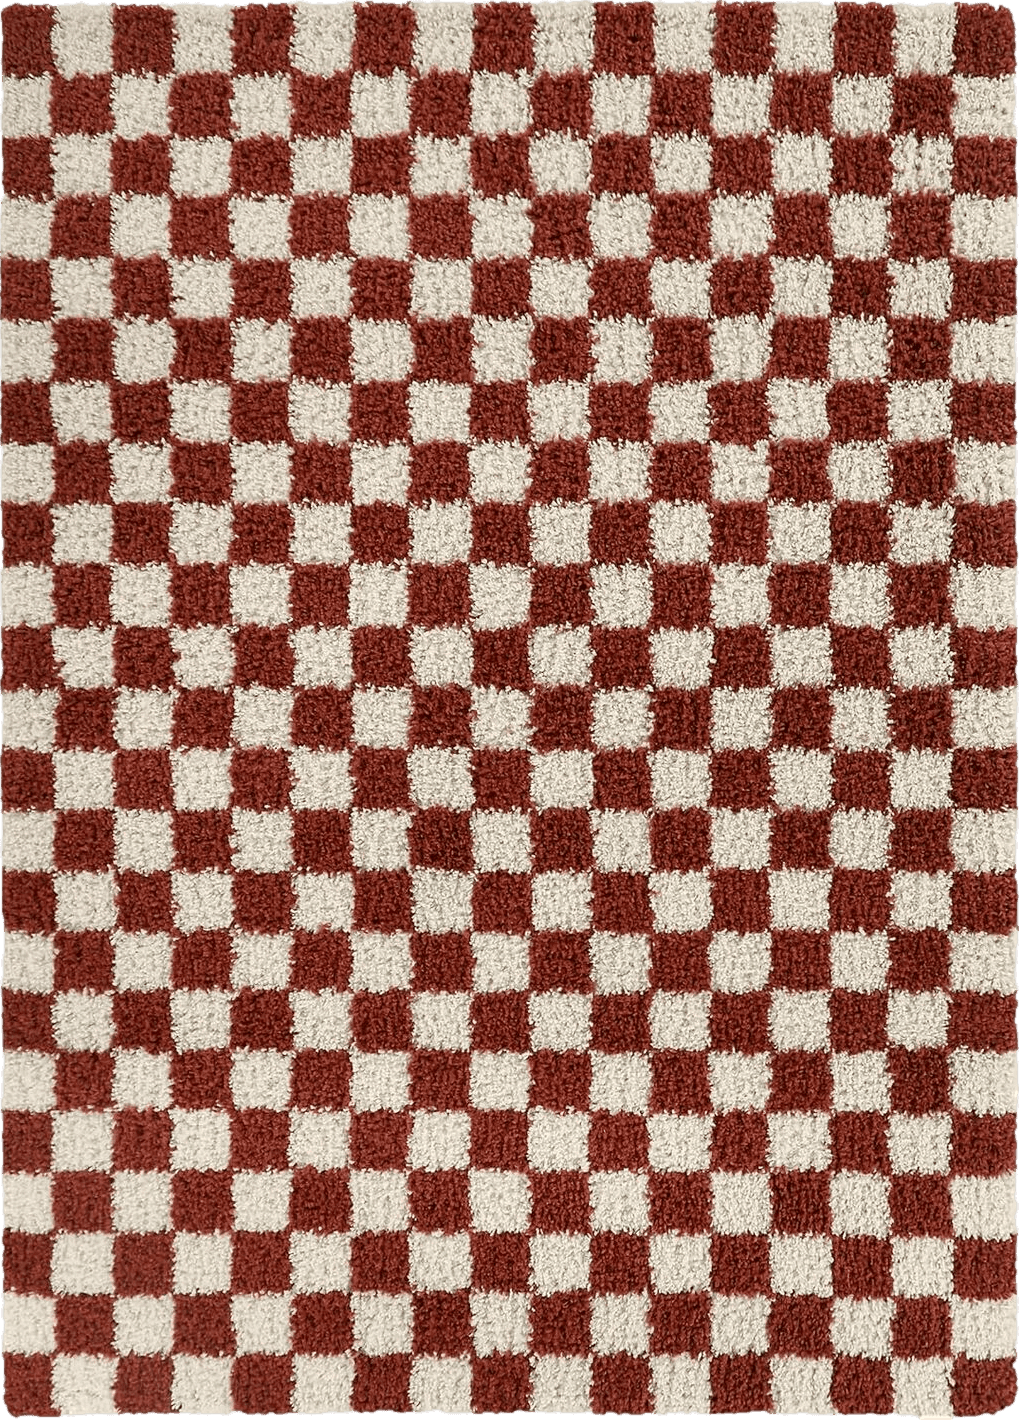 Balta Rugs Oslo Checkered Shag Rug, Red, 5' 3" x 7'